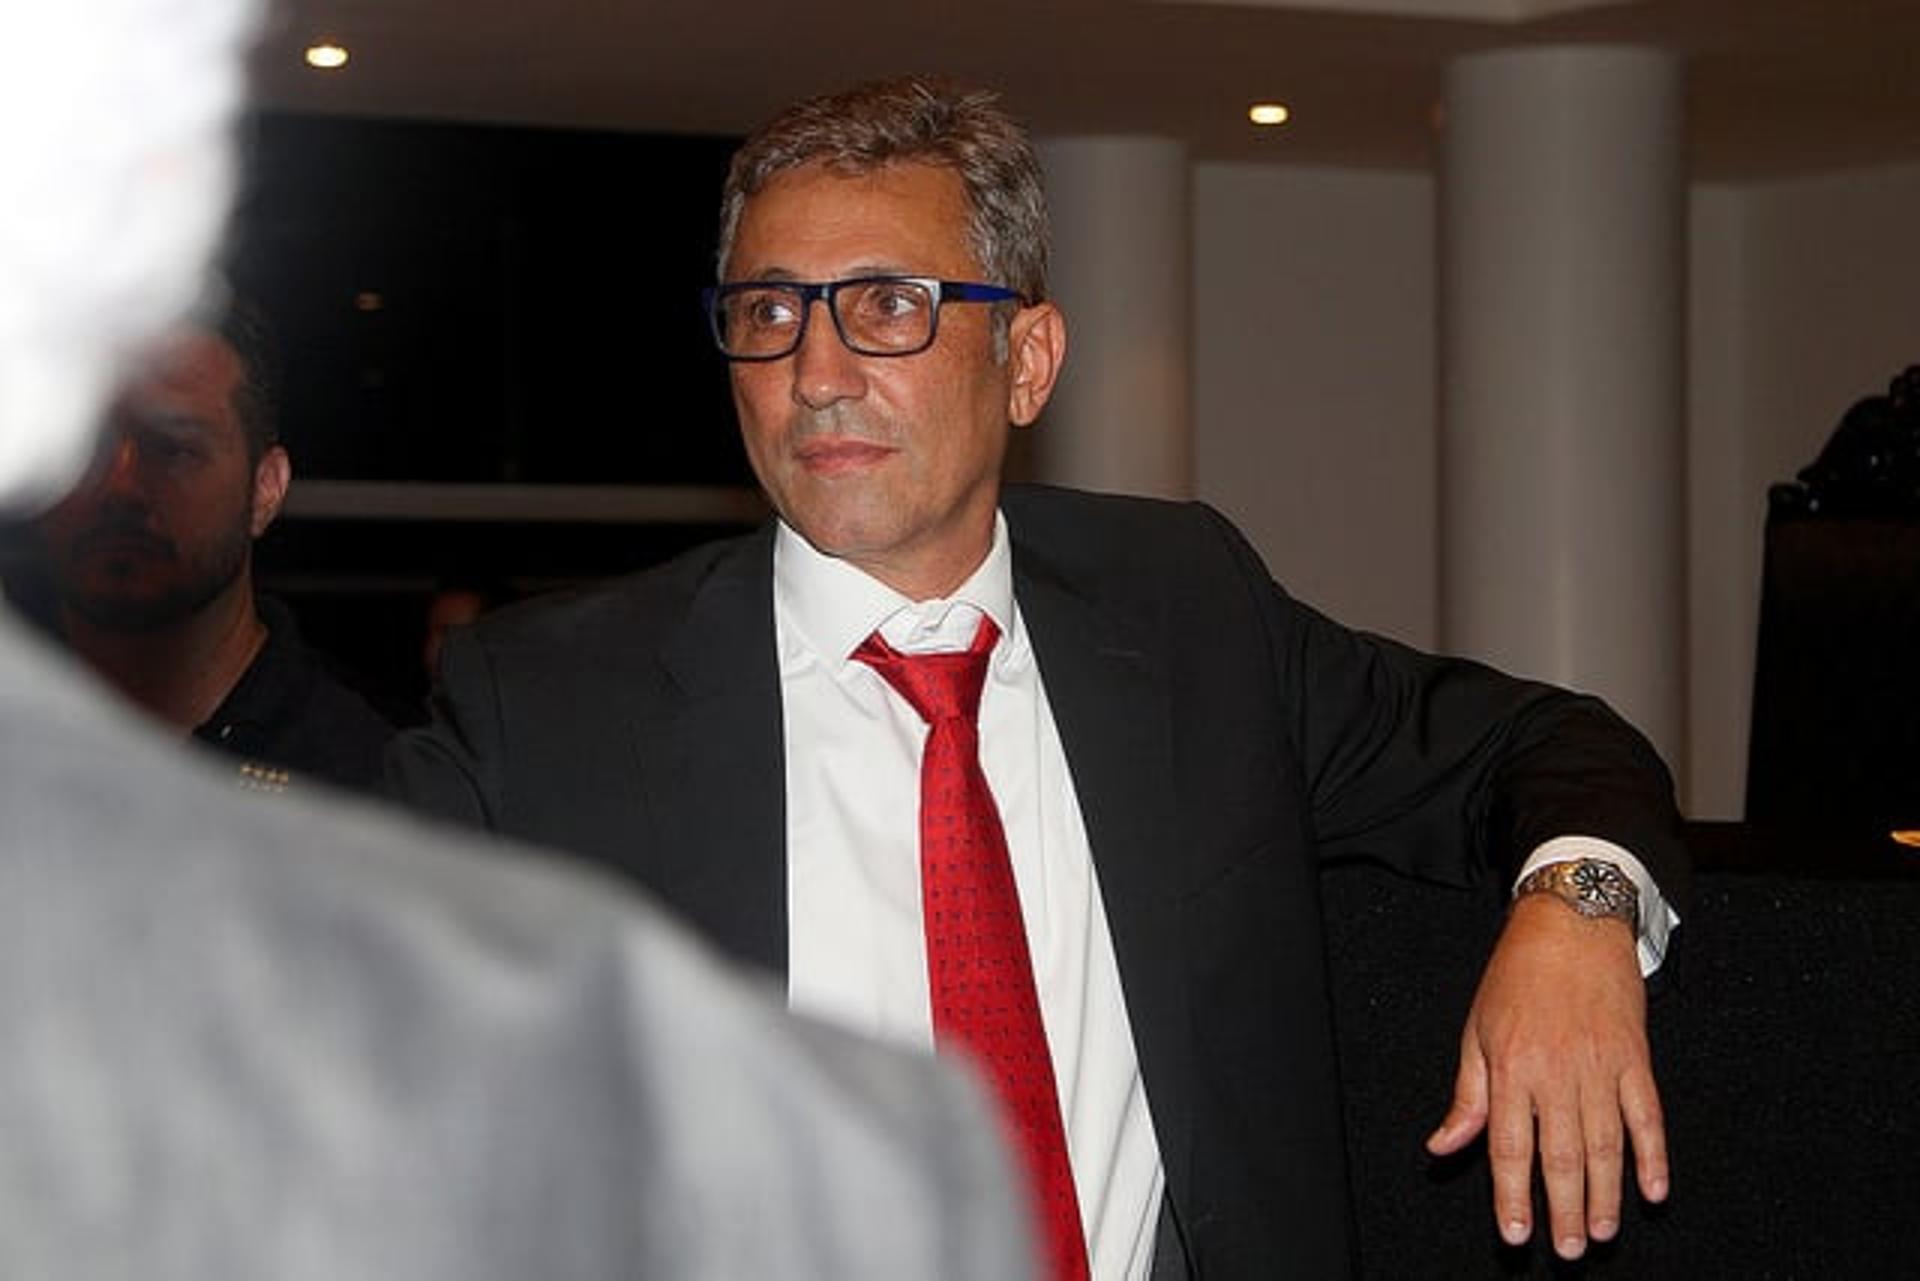 Campello será o próximo presidente do Vasco nos próximos três anos. Veja a seguir imagens do novo mandatário&nbsp;